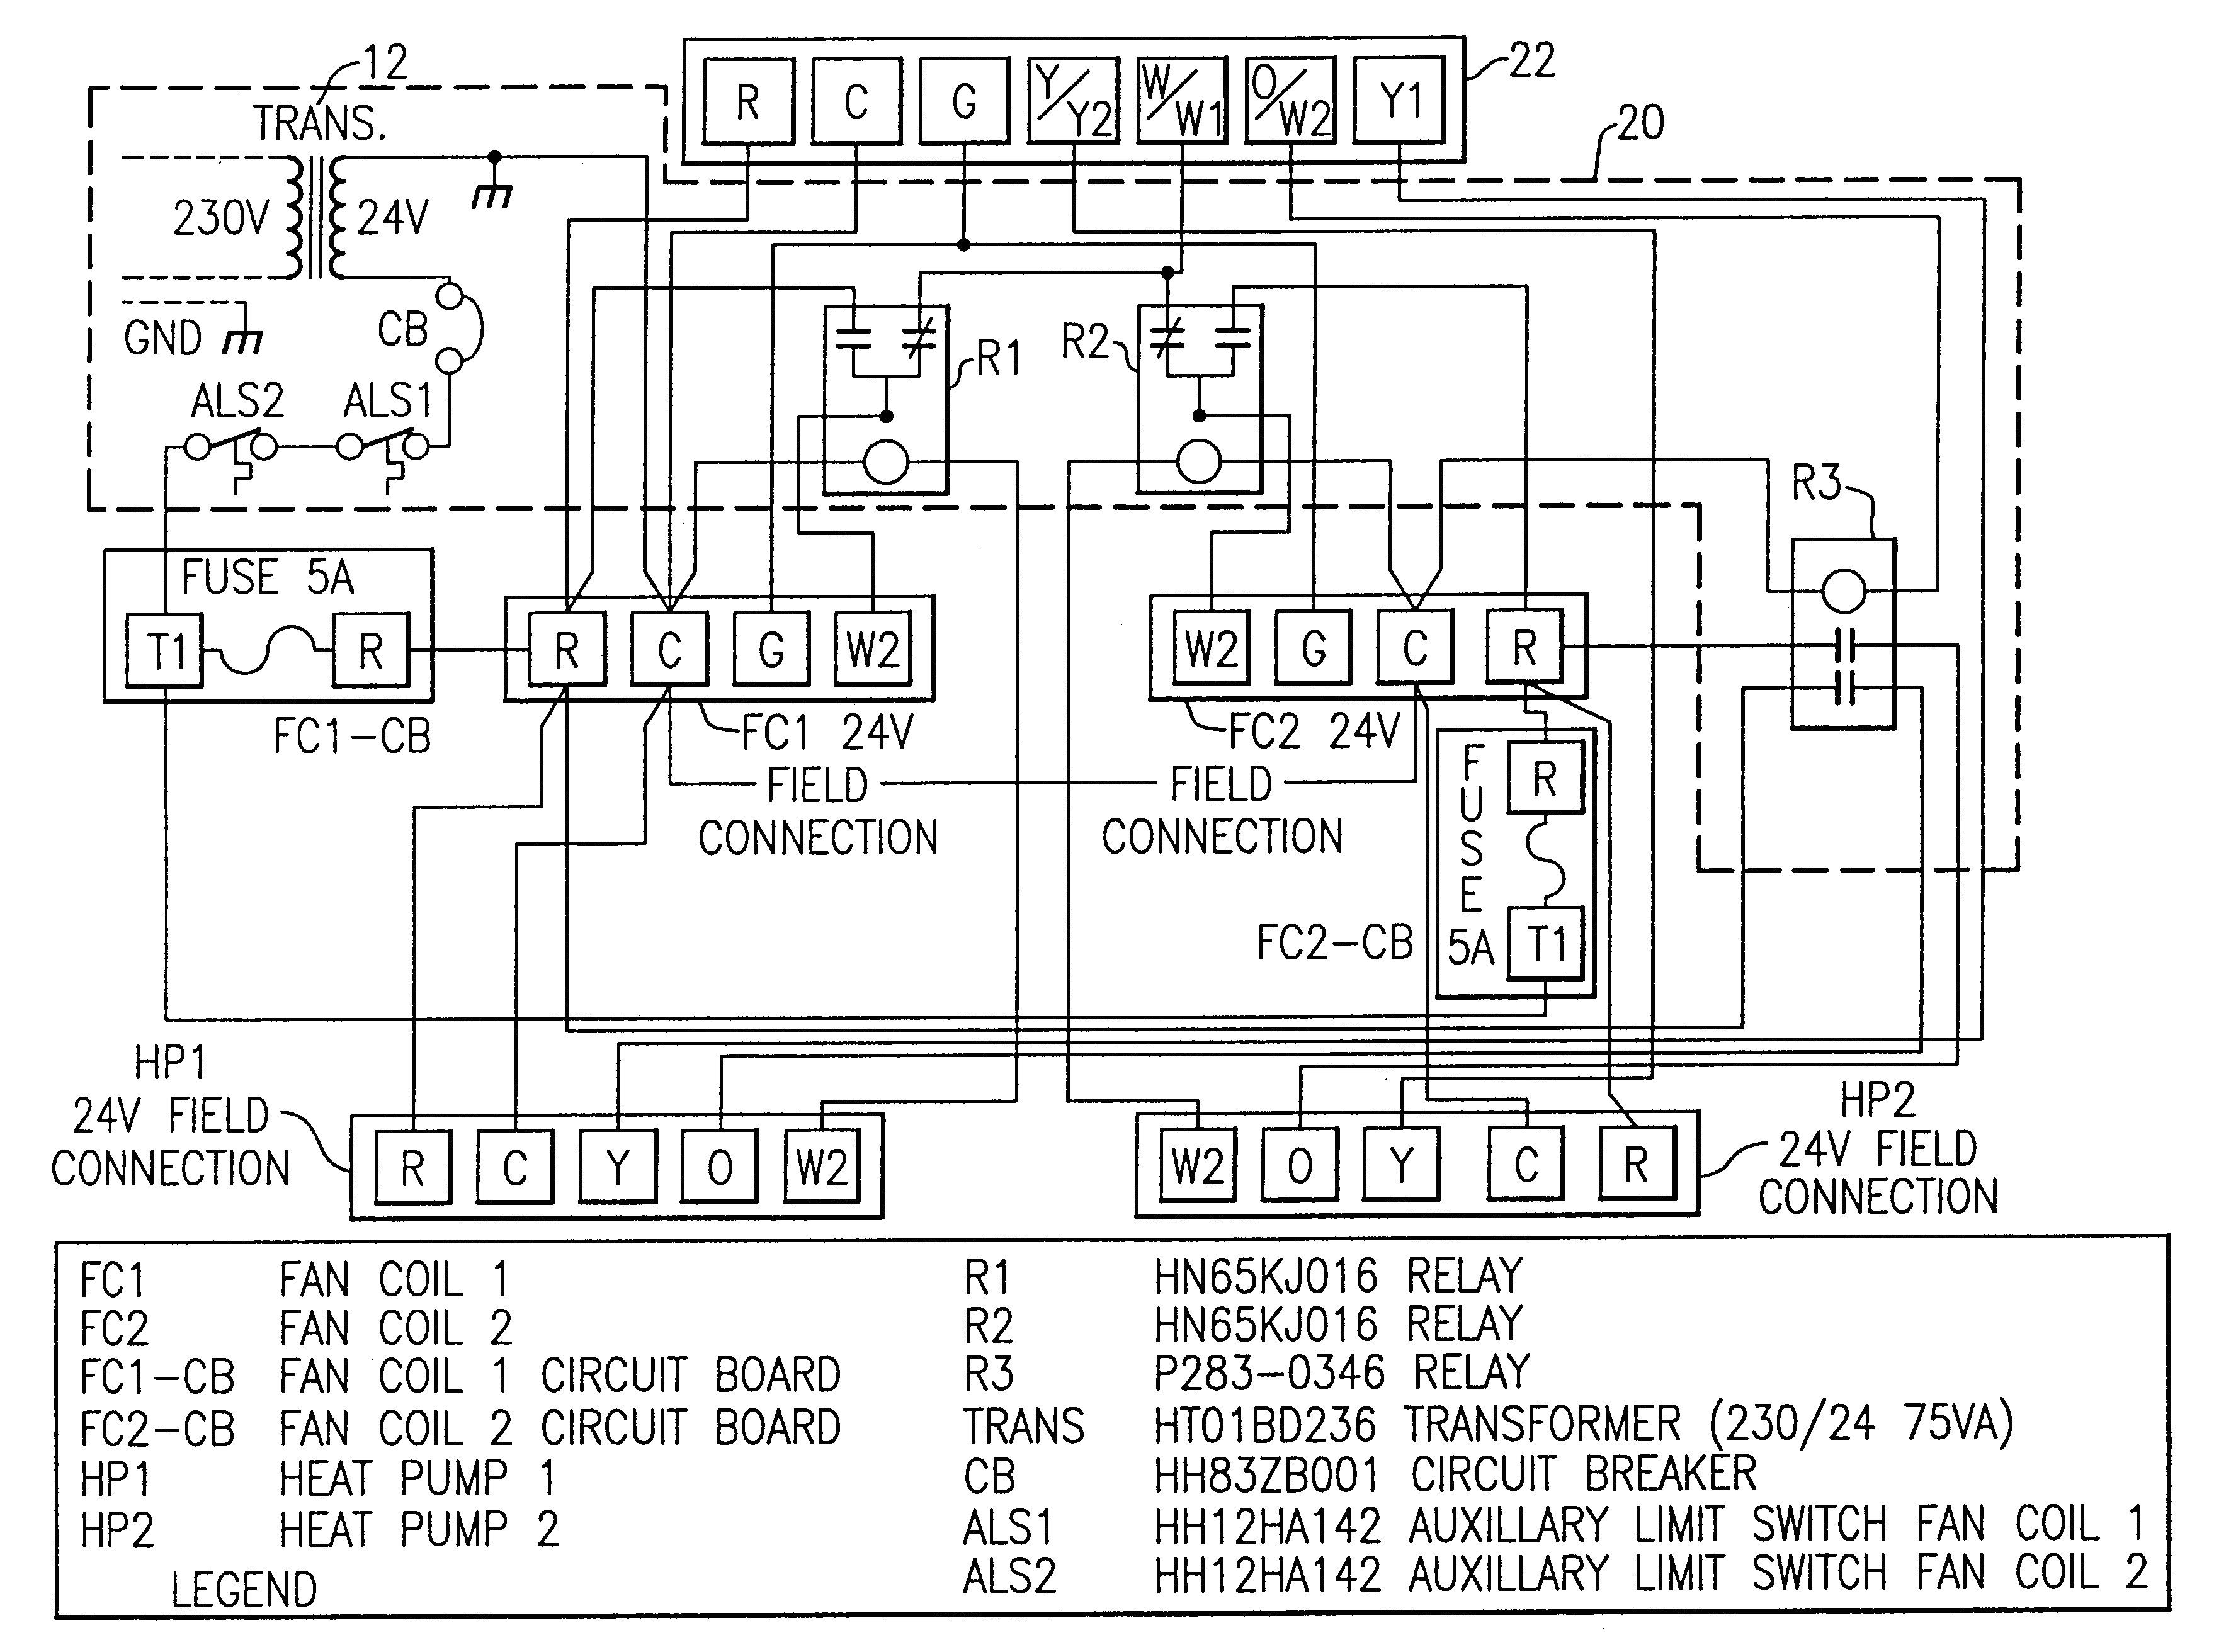 american standard air handler wiring diagram wiring diagram pos american standard furnace wiring diagram american standard wiring diagram